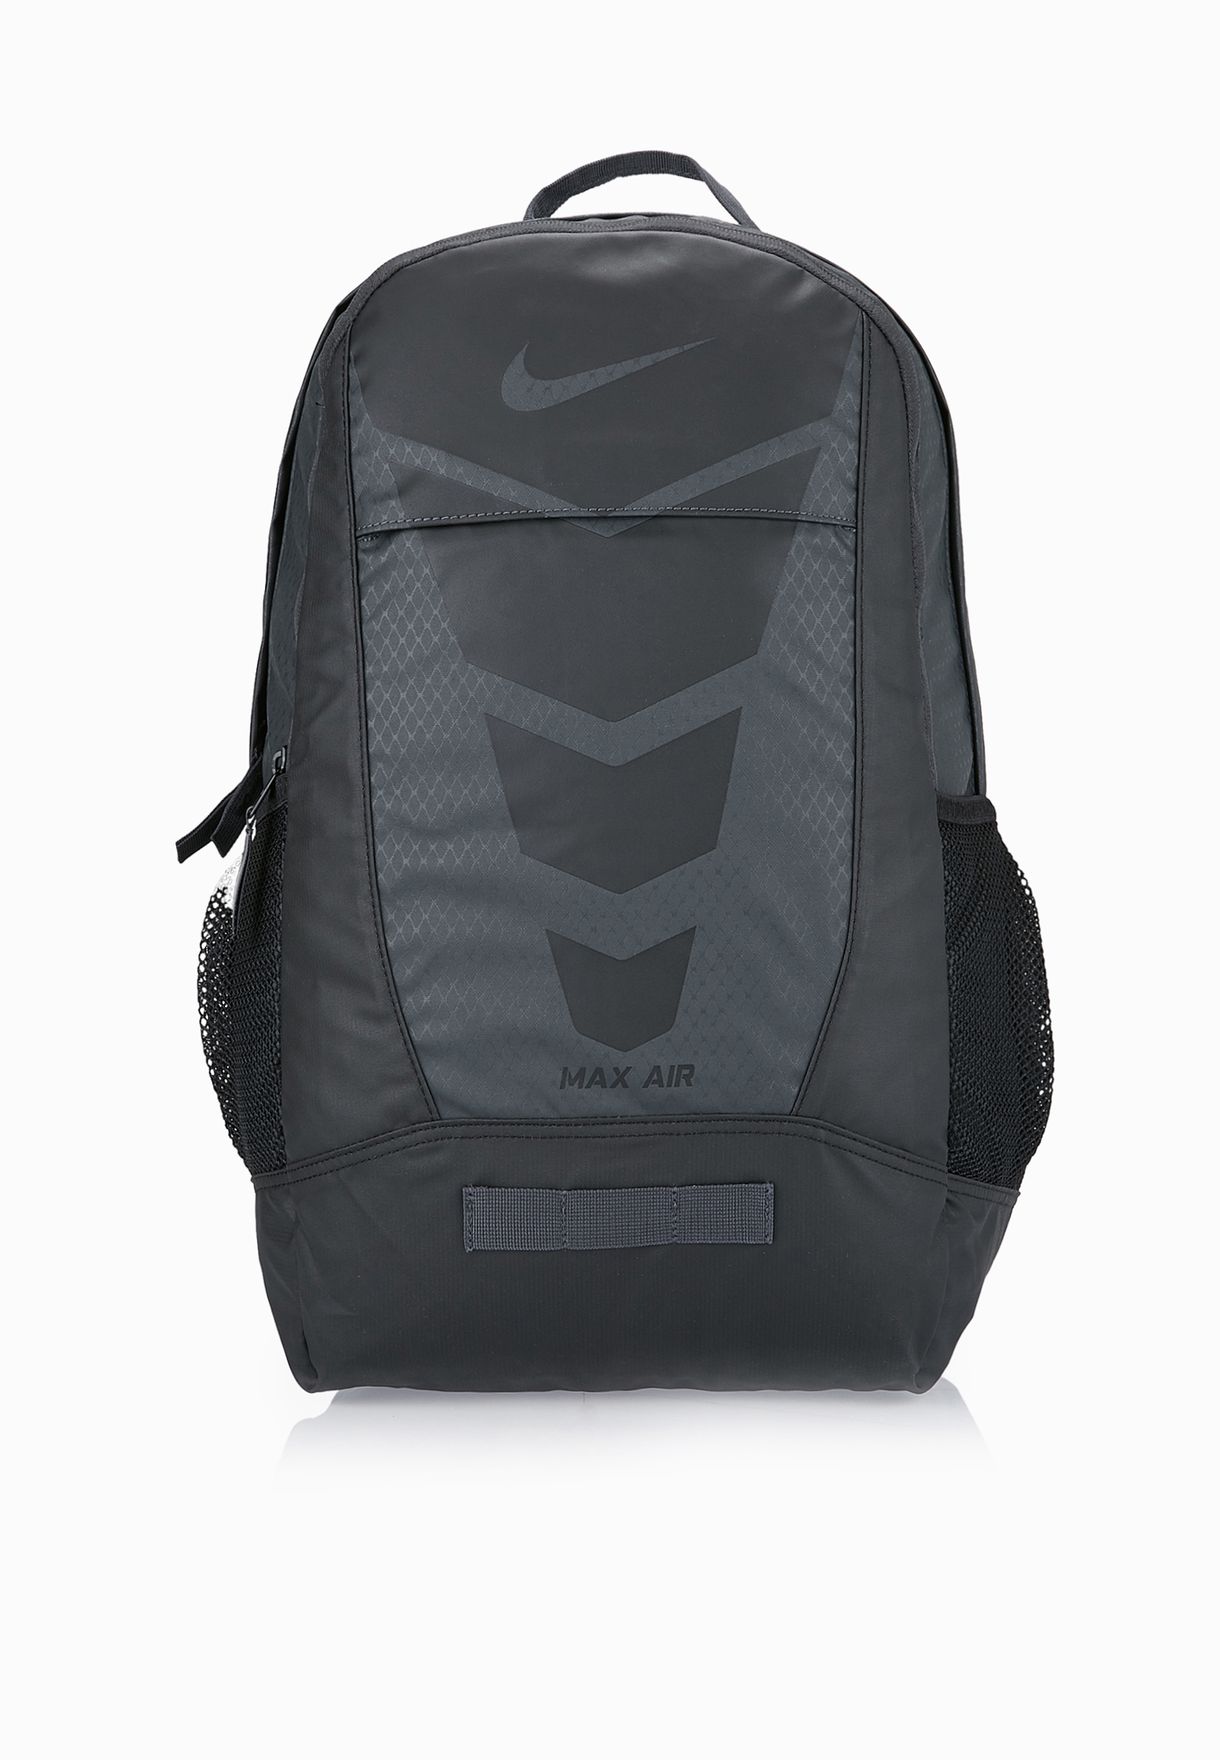 nike max air backpack sale